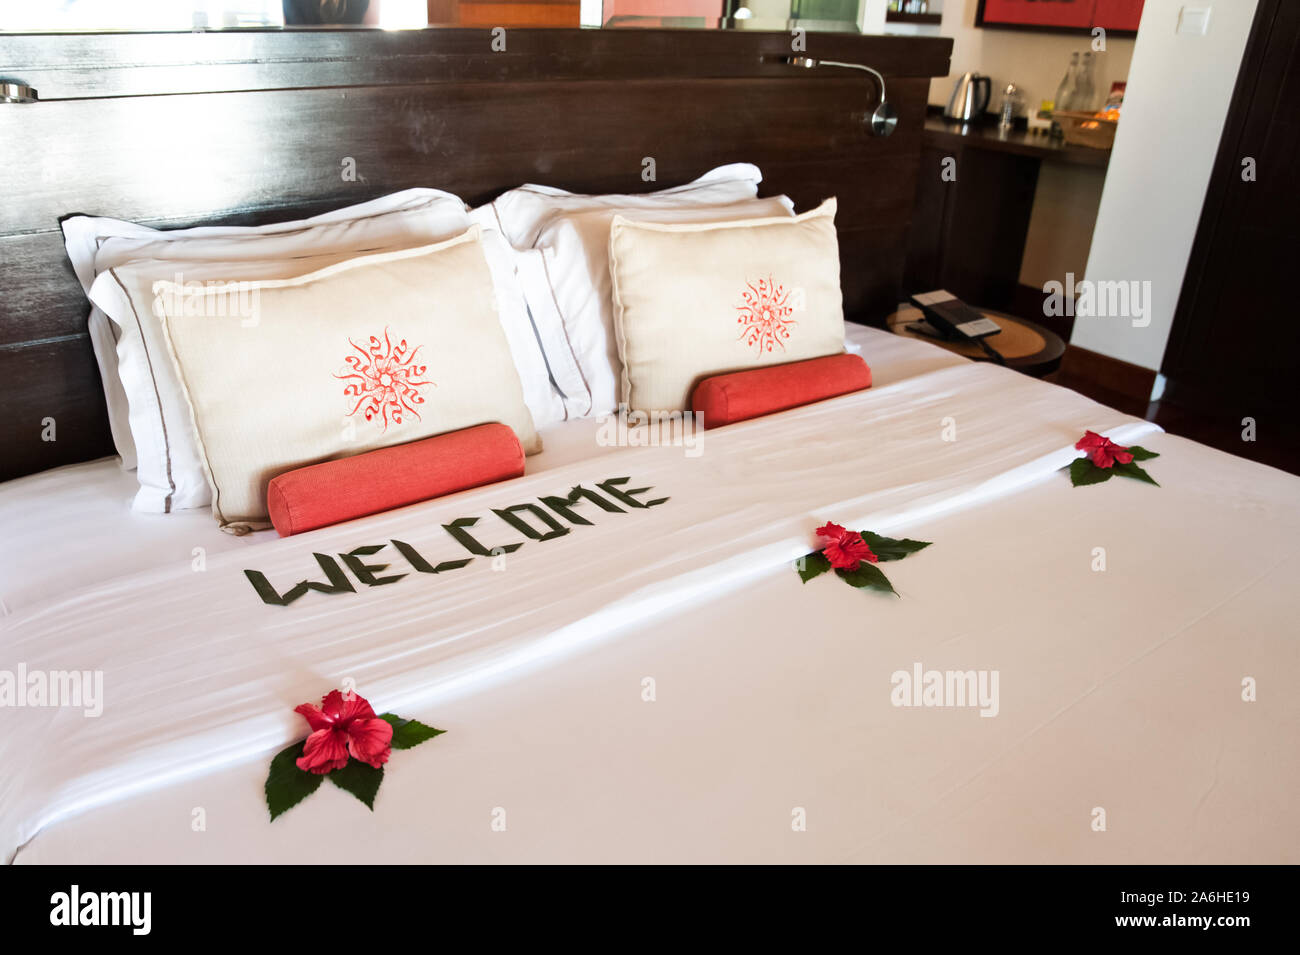 Grand lit avec oreillers et une couverture blanche, décoré avec des fleurs tropicales et une inscription - bienvenue. Thème de l'hôtel service, hôtel, plage, reste Banque D'Images